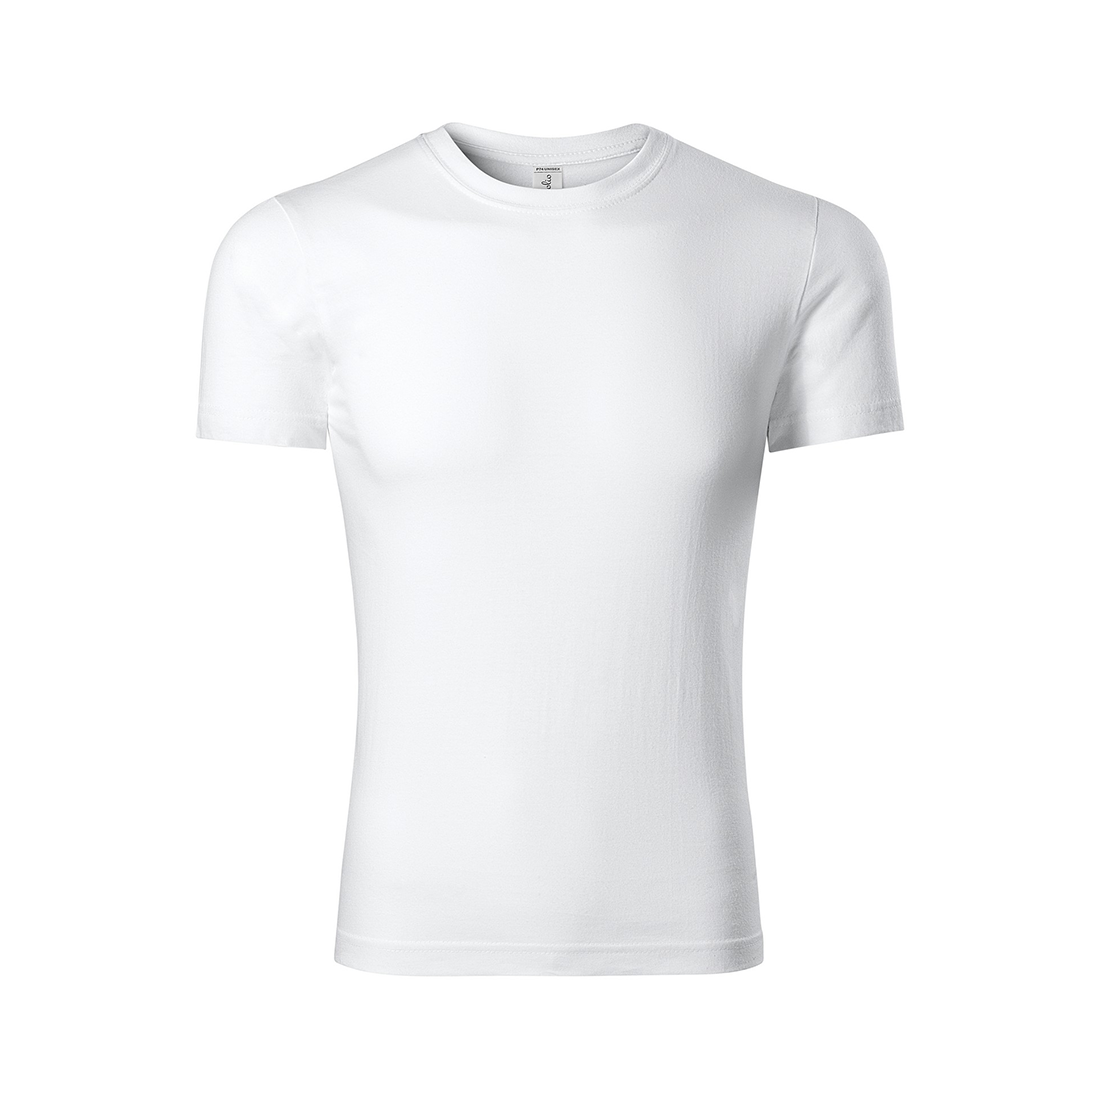 PEAK Unisex T-shirt - Safetywear